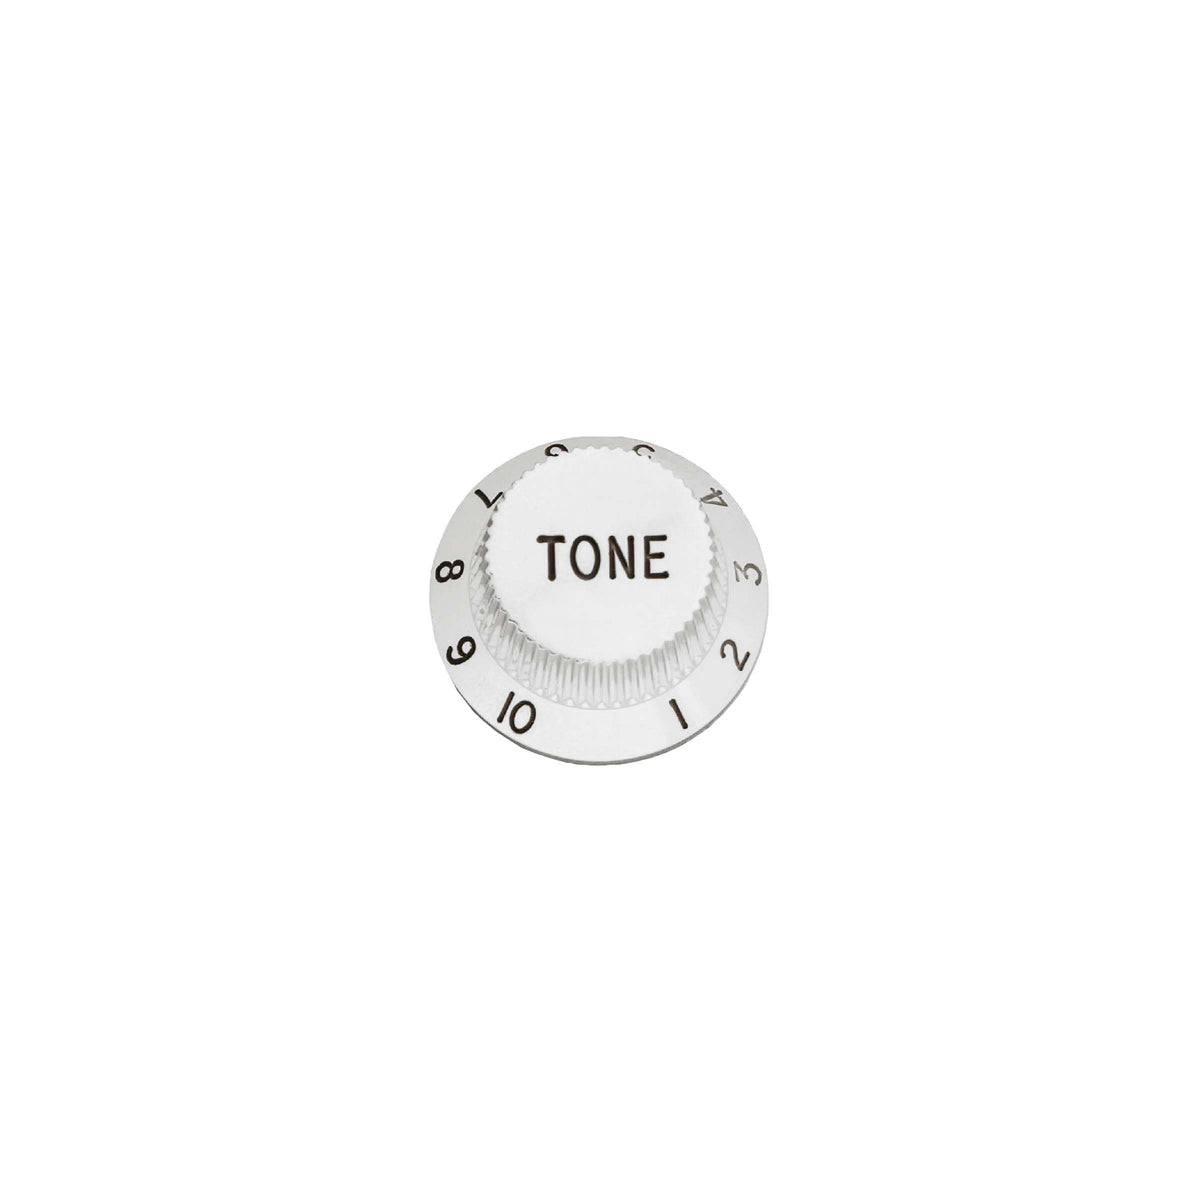 Tone Knob for Axis, Cutlass, Albert Lee